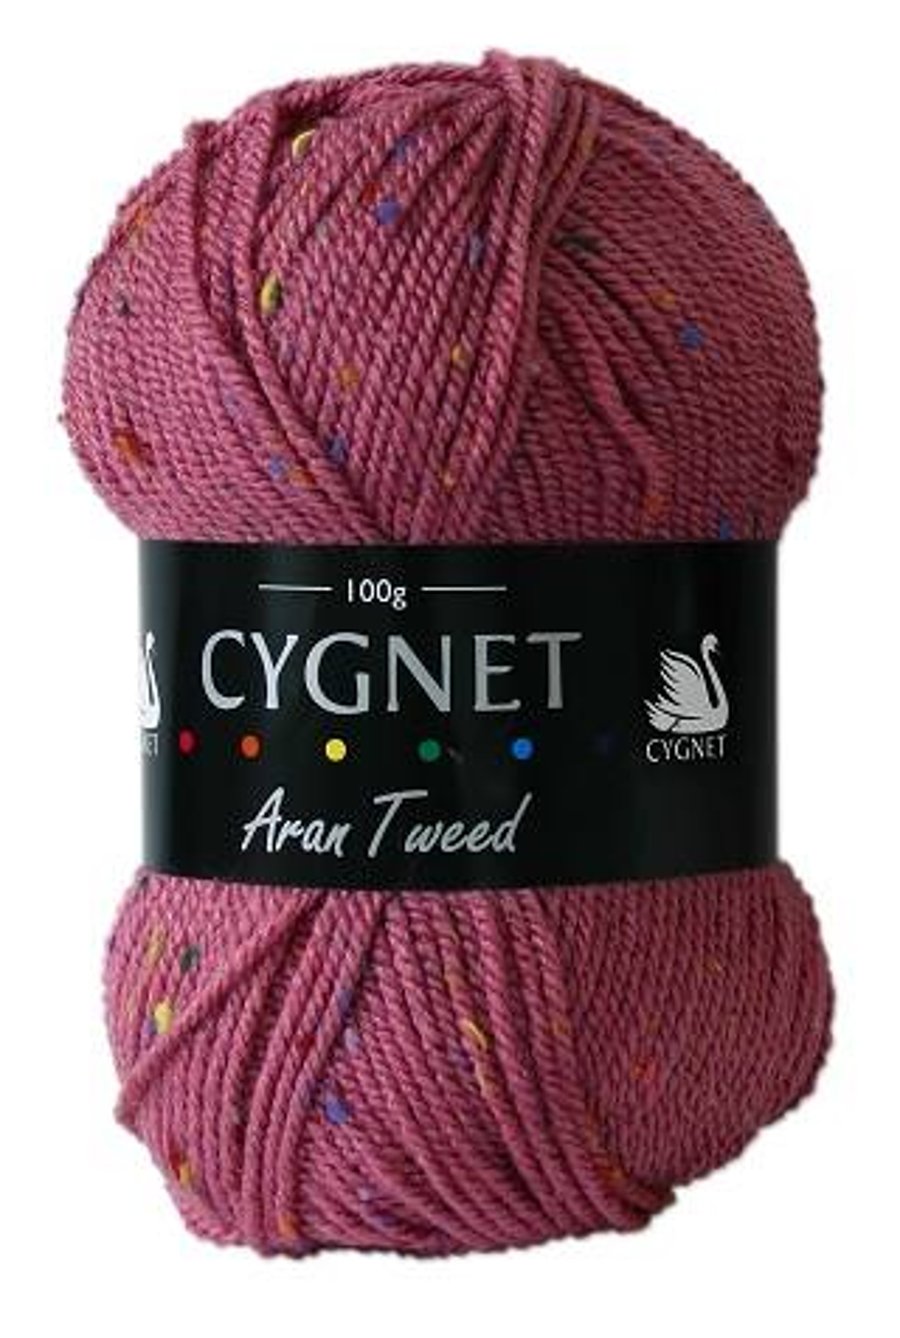 Cygnet Aran Tweed - Rosewood